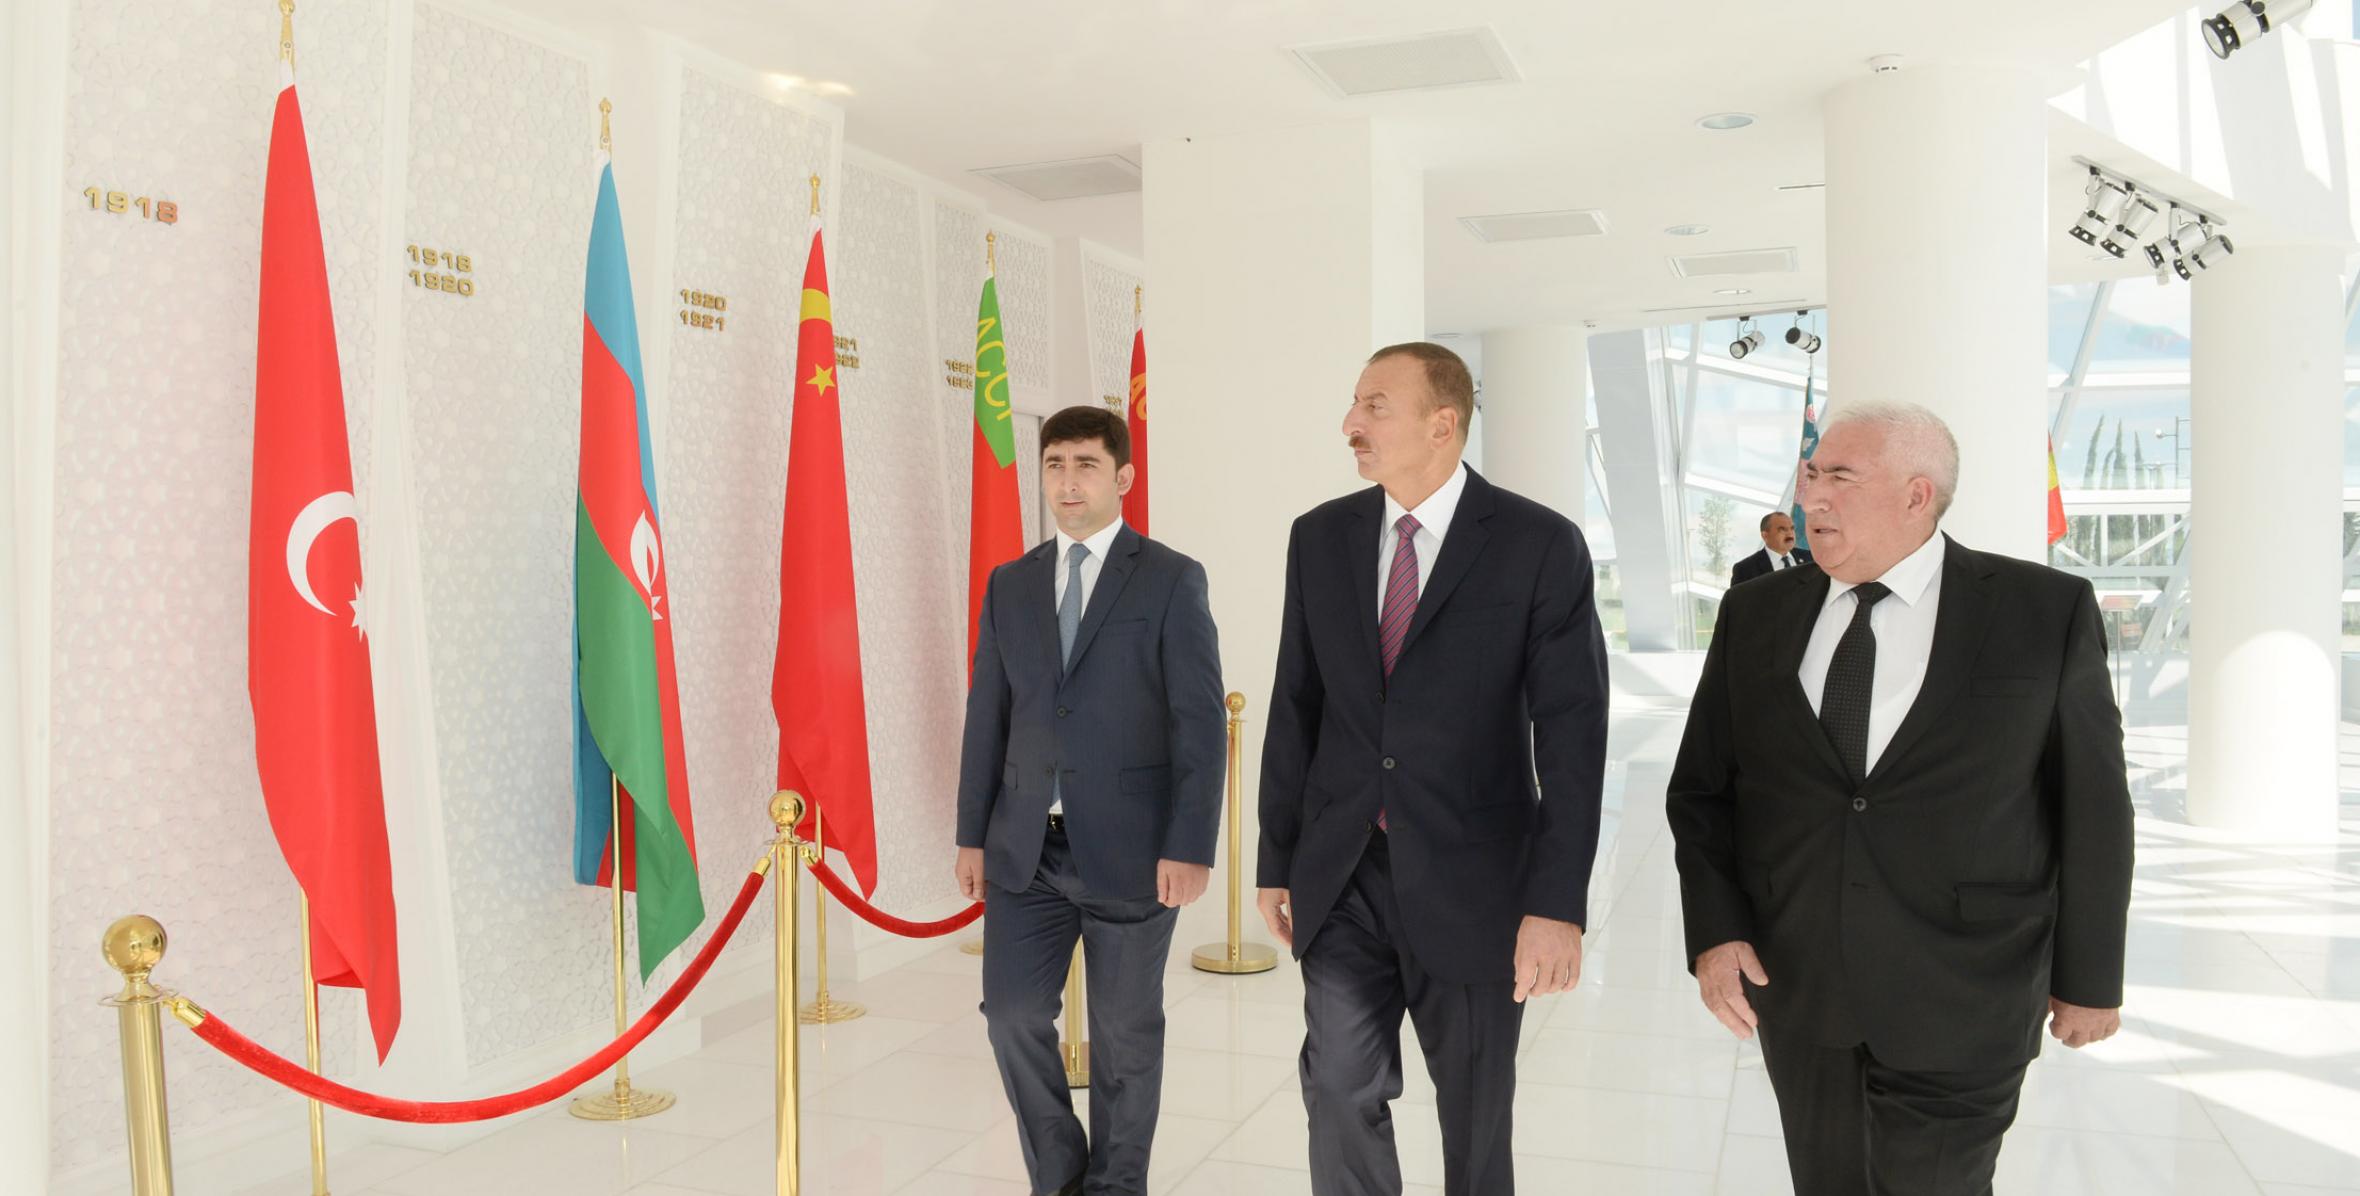 Ильхам Алиев ознакомился с Площадью Флага и Музеем Флага в Шамкире